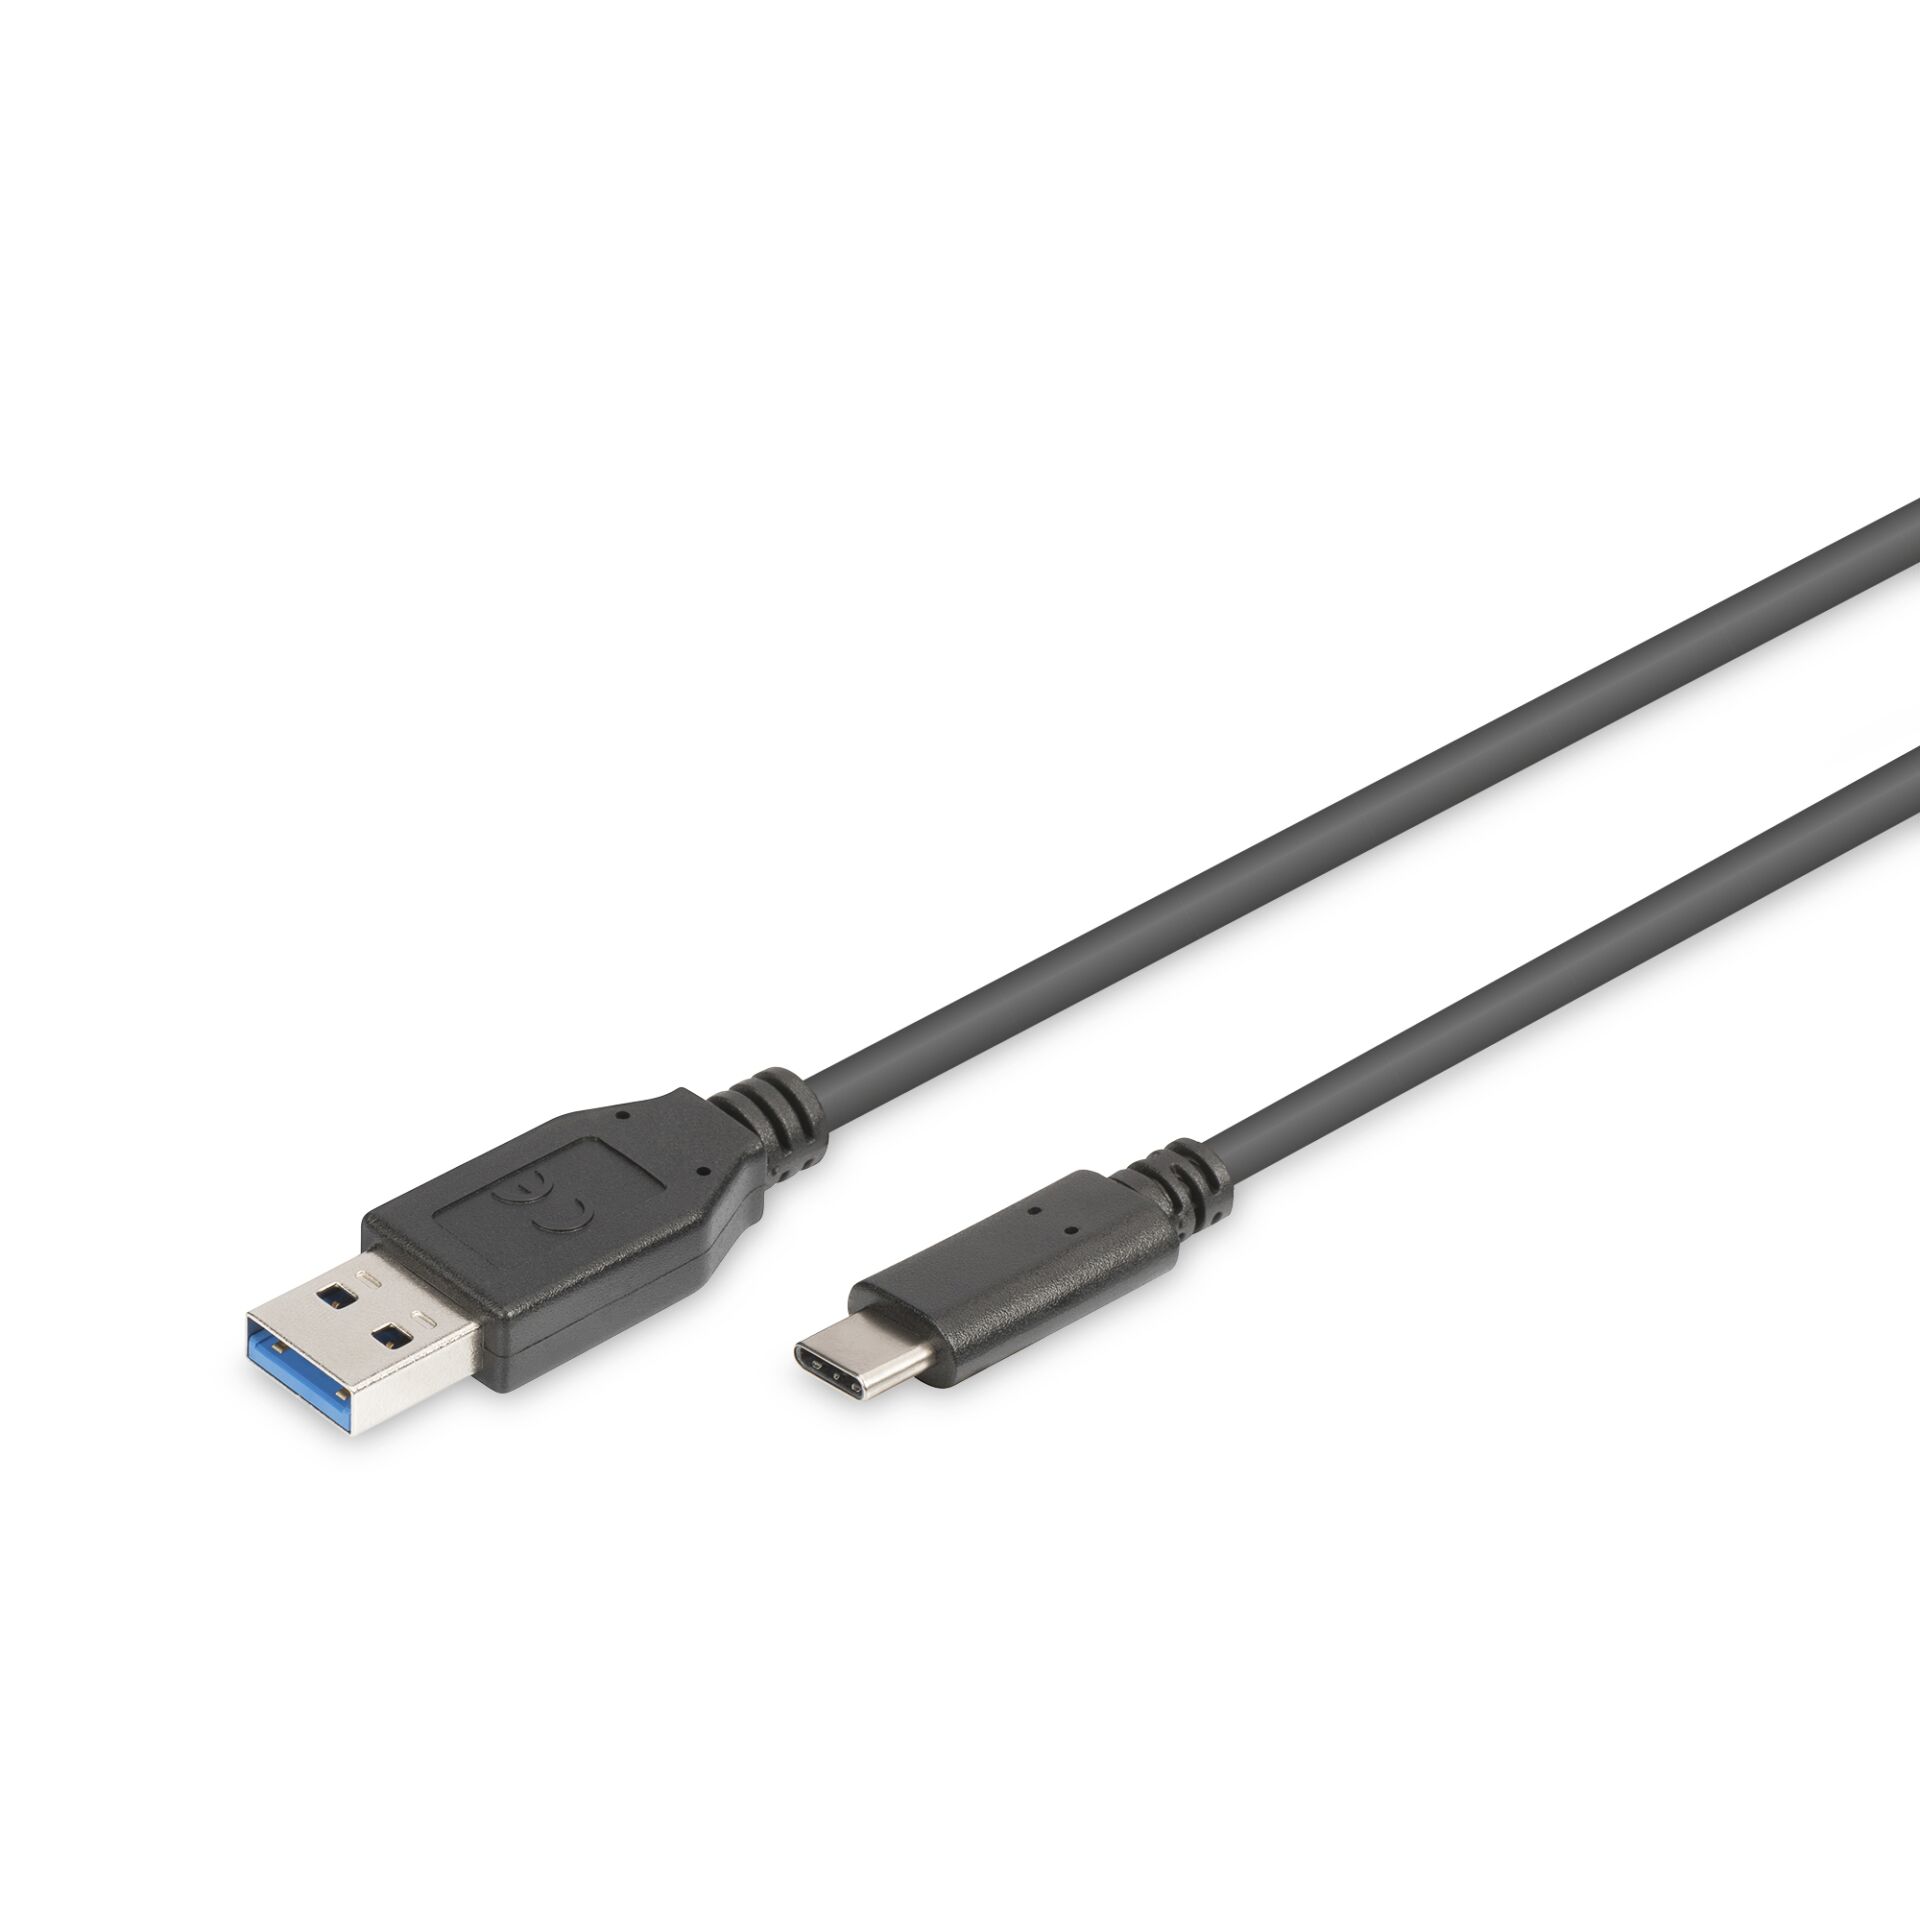 DIGITUS USB Type-C Cable